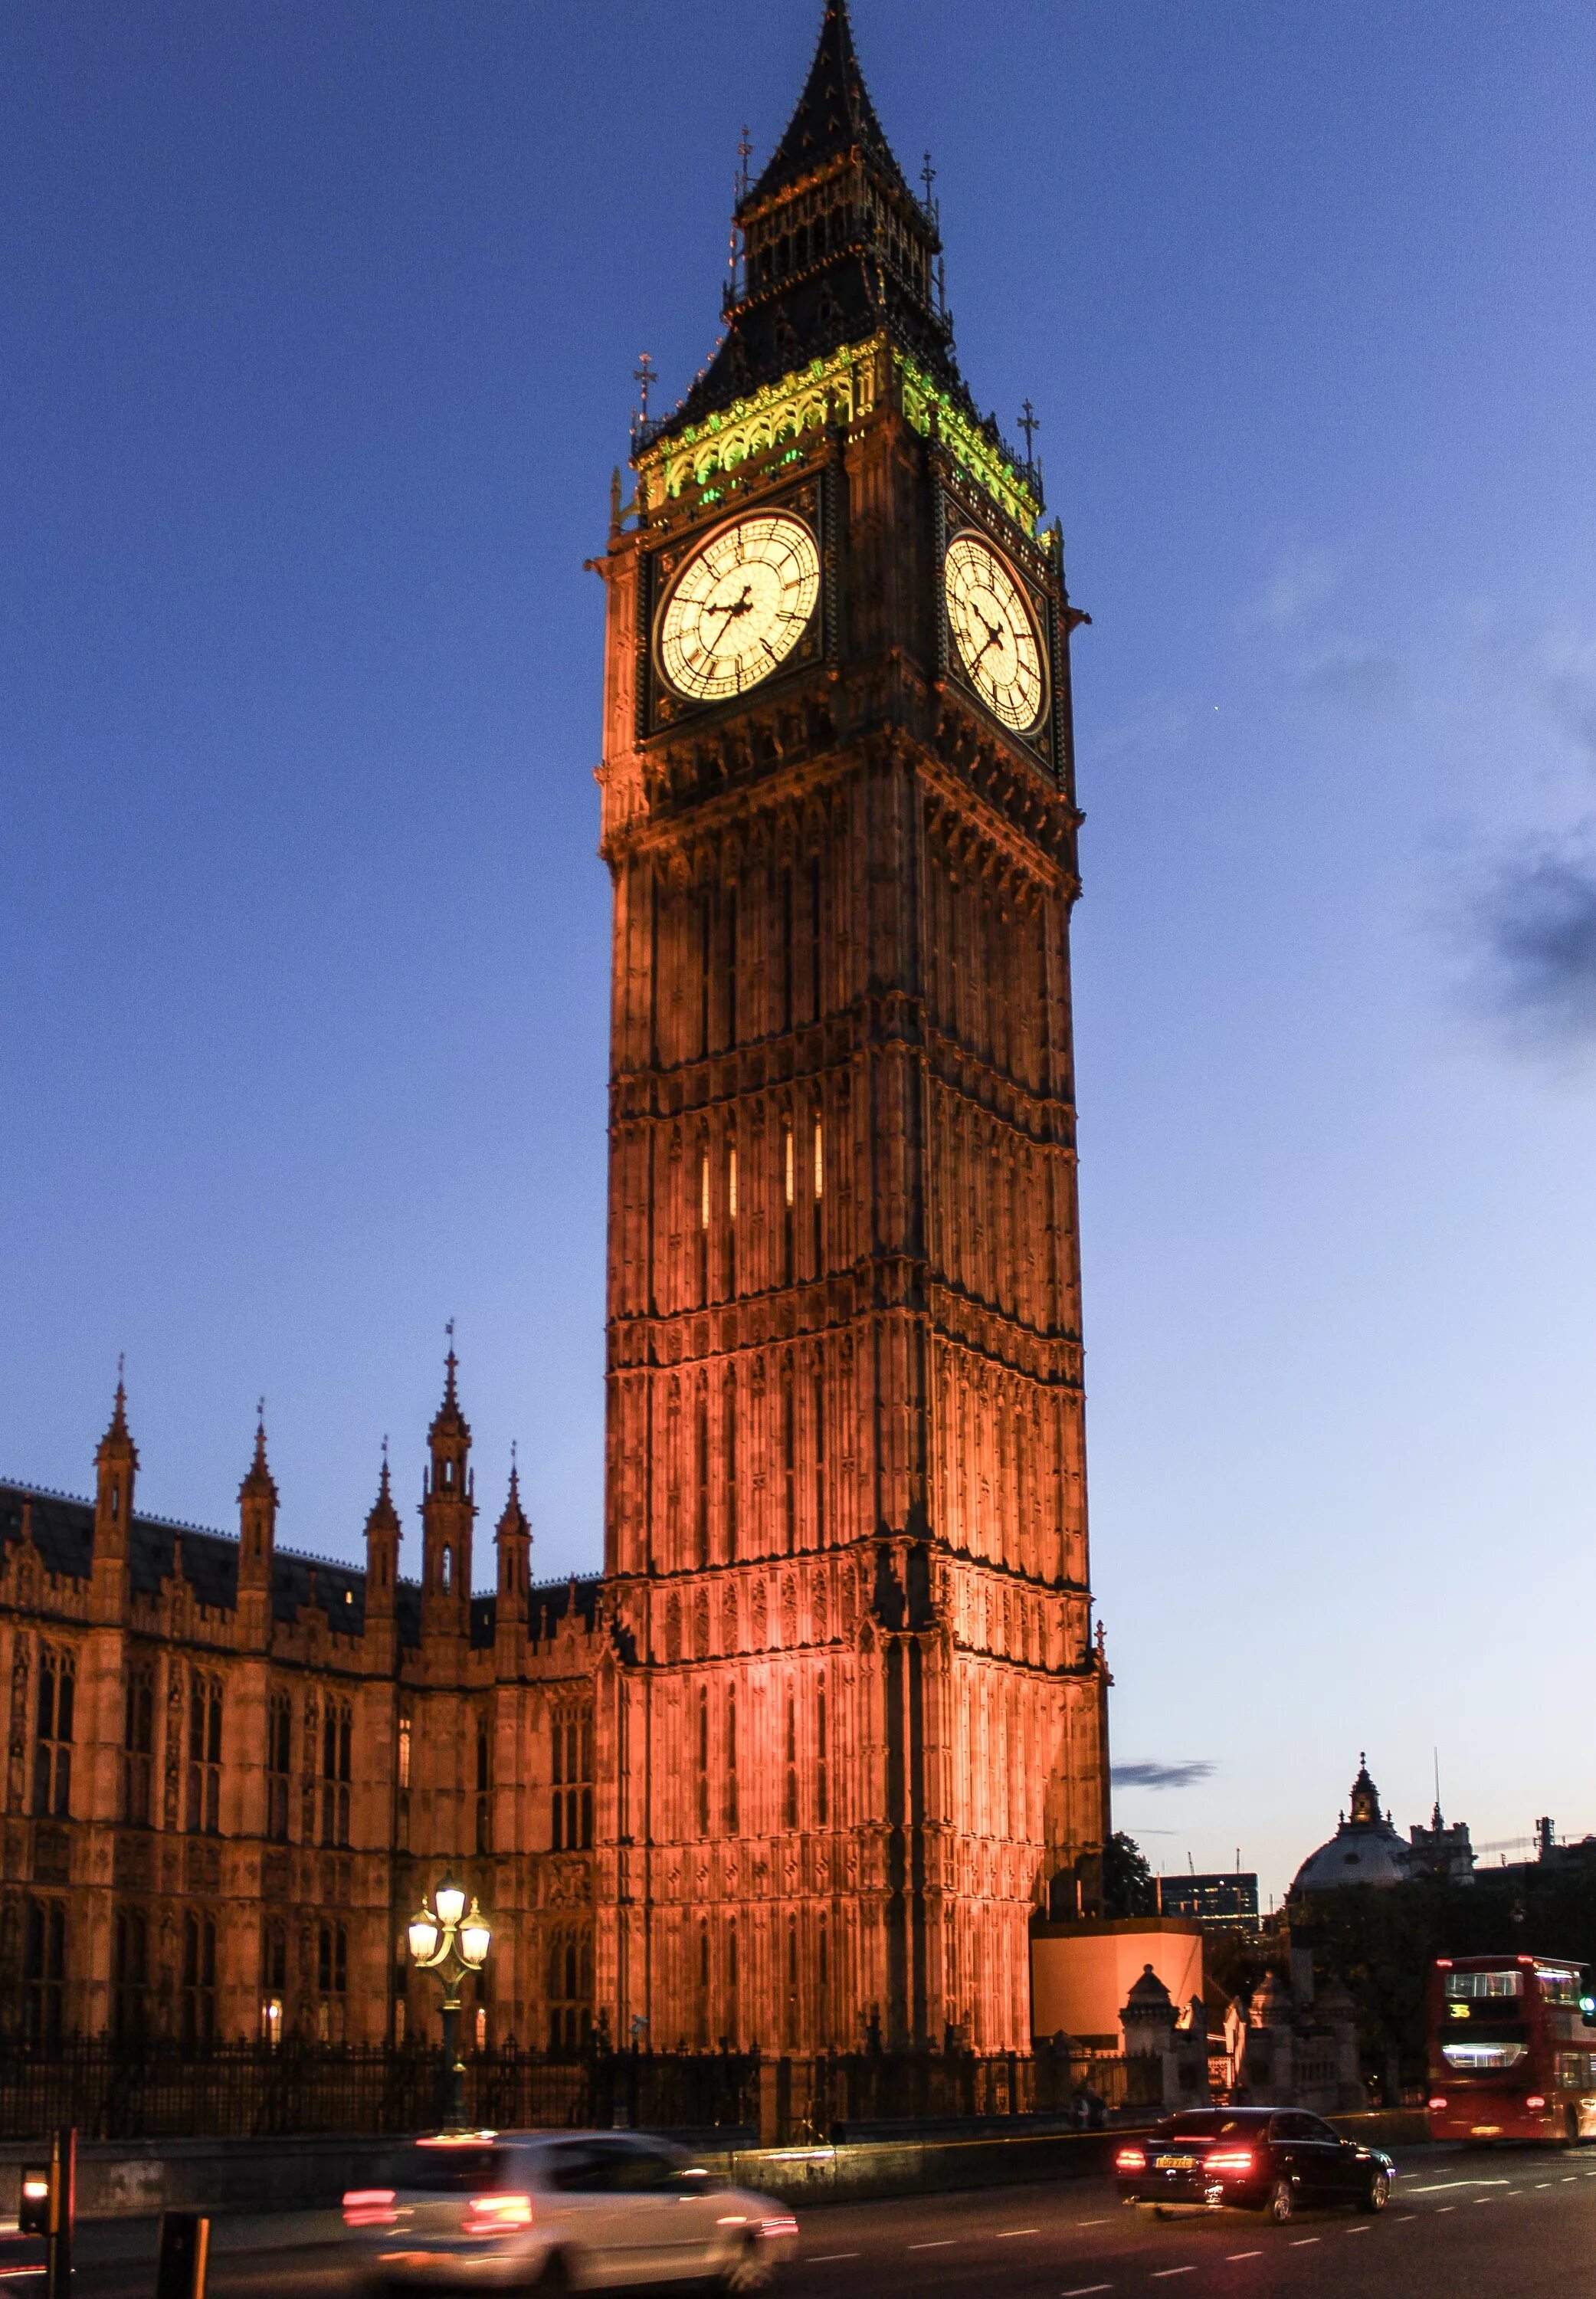 Watching britain. Биг-Бен (башня Елизаветы). Биг Бен в Лондоне. Часы Биг Бен в Лондоне. Достопримечательности Лондона Биг Бен.